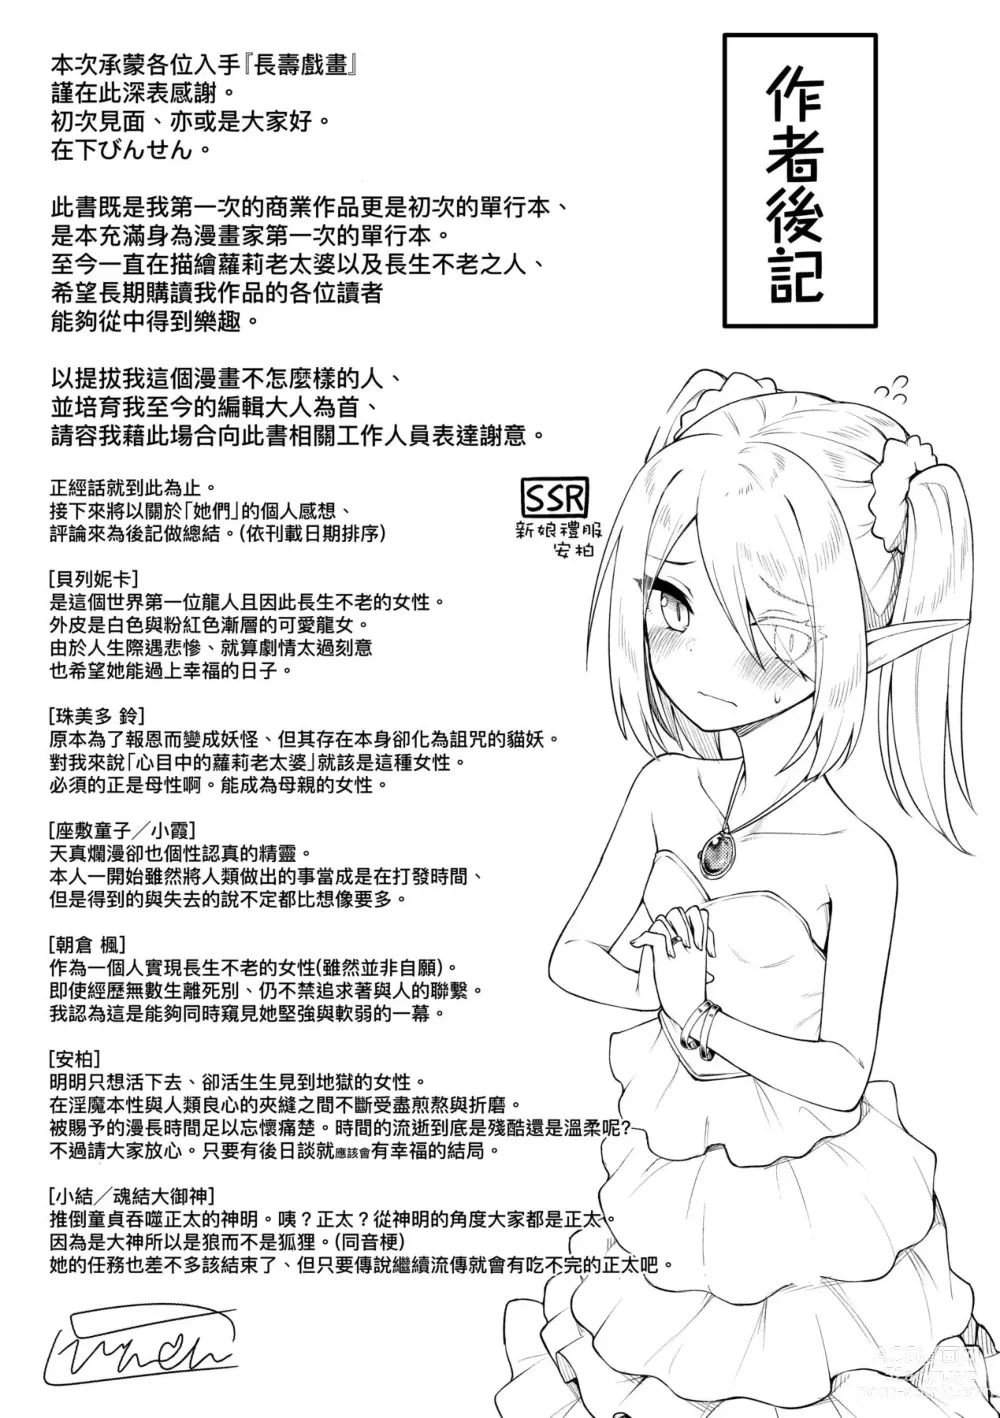 Page 196 of manga Chojyu Giga (decensored)